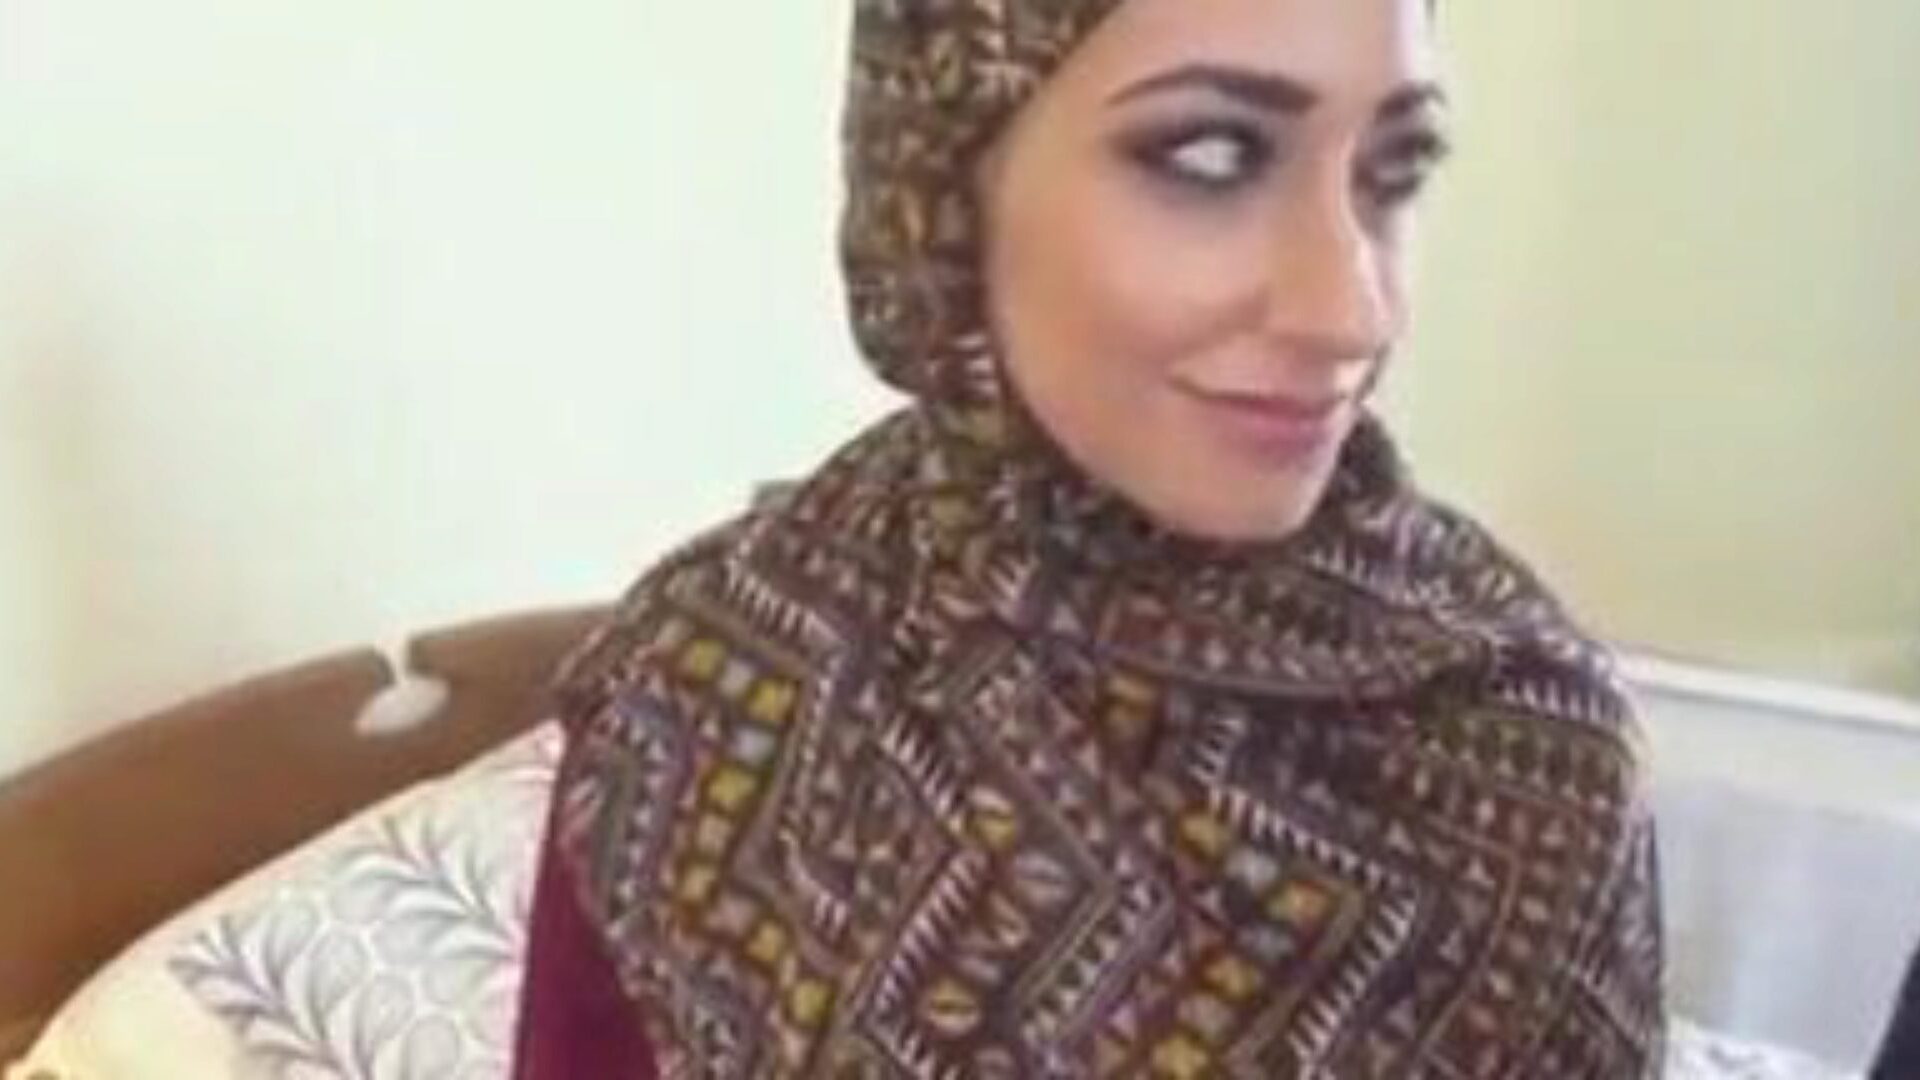 μουσουλμανικό hijab κορίτσι γαμημένο, δωρεάν μουσουλμανικό Tube πορνό βίντεο cd Παρακολουθήστε μουσουλμανικό hijab κορίτσι γαμημένο σκηνικό ταινίας στο xhamster, η μεγαλύτερη ιστοσελίδα του fuck-fest Tube με τόνους δωρεάν αραβικού μουσουλμανικού σωλήνα